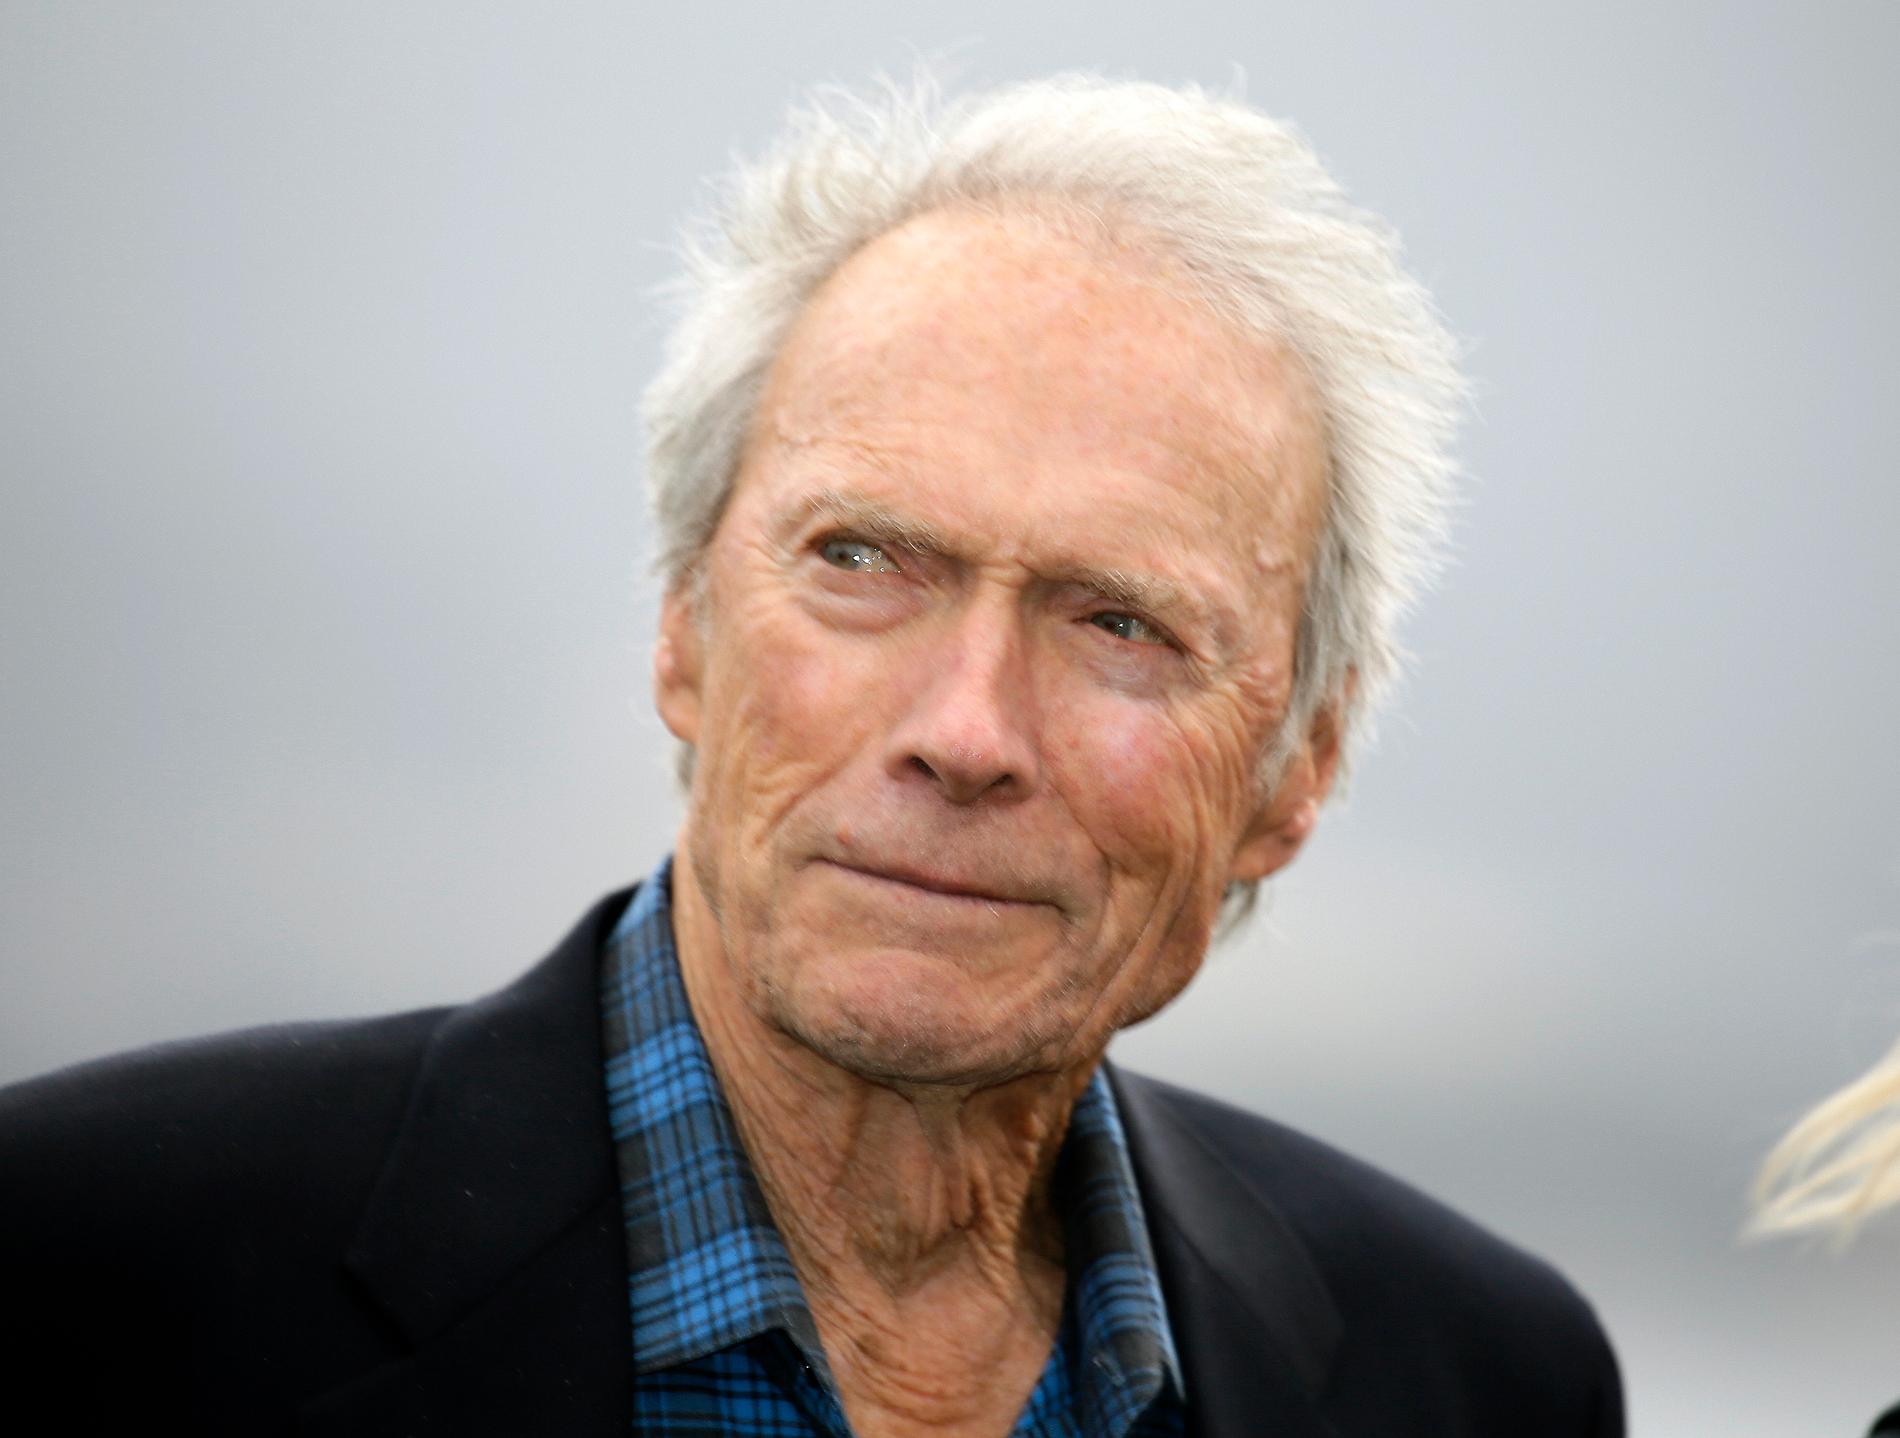 Uppvaktning undanbedes. Clint Eastwood fyller 90 år men vill helst vara i fred och jobba – om man ska tro hans barn. Arkivbild.